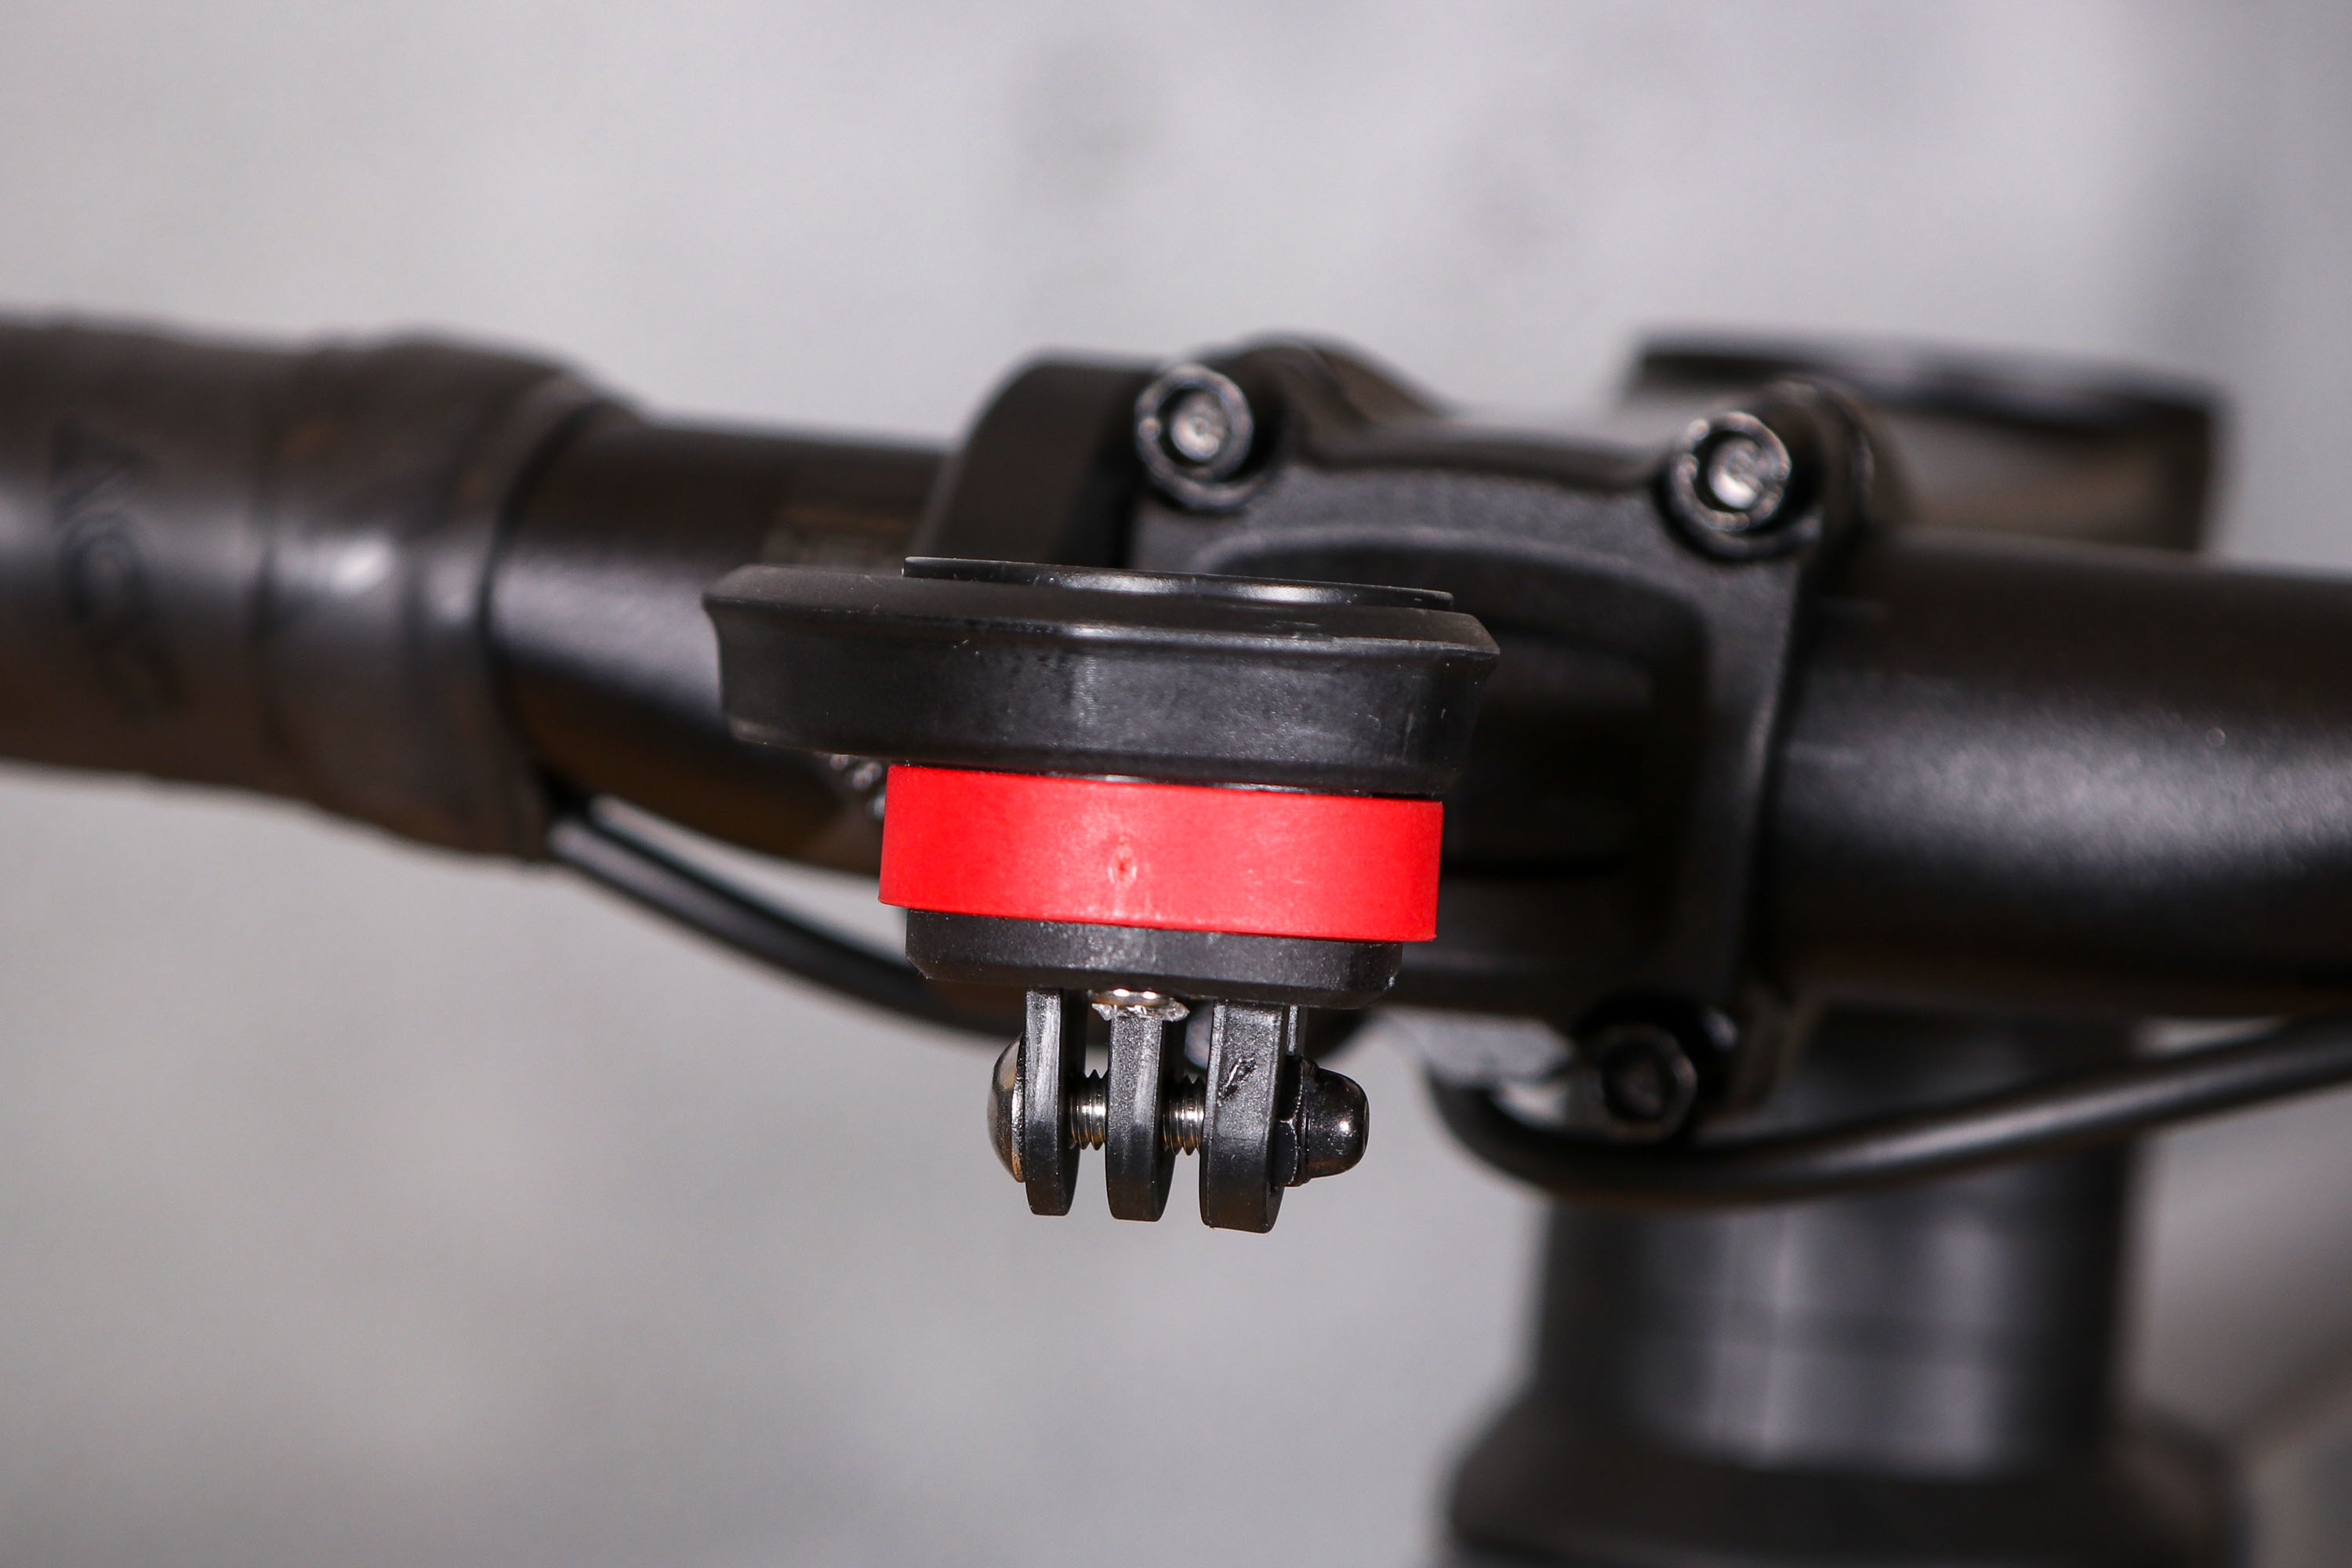 UK Bike Stem Extension Mount Holder Bracket Adapter For GARMIN Edge GPS GoPro 